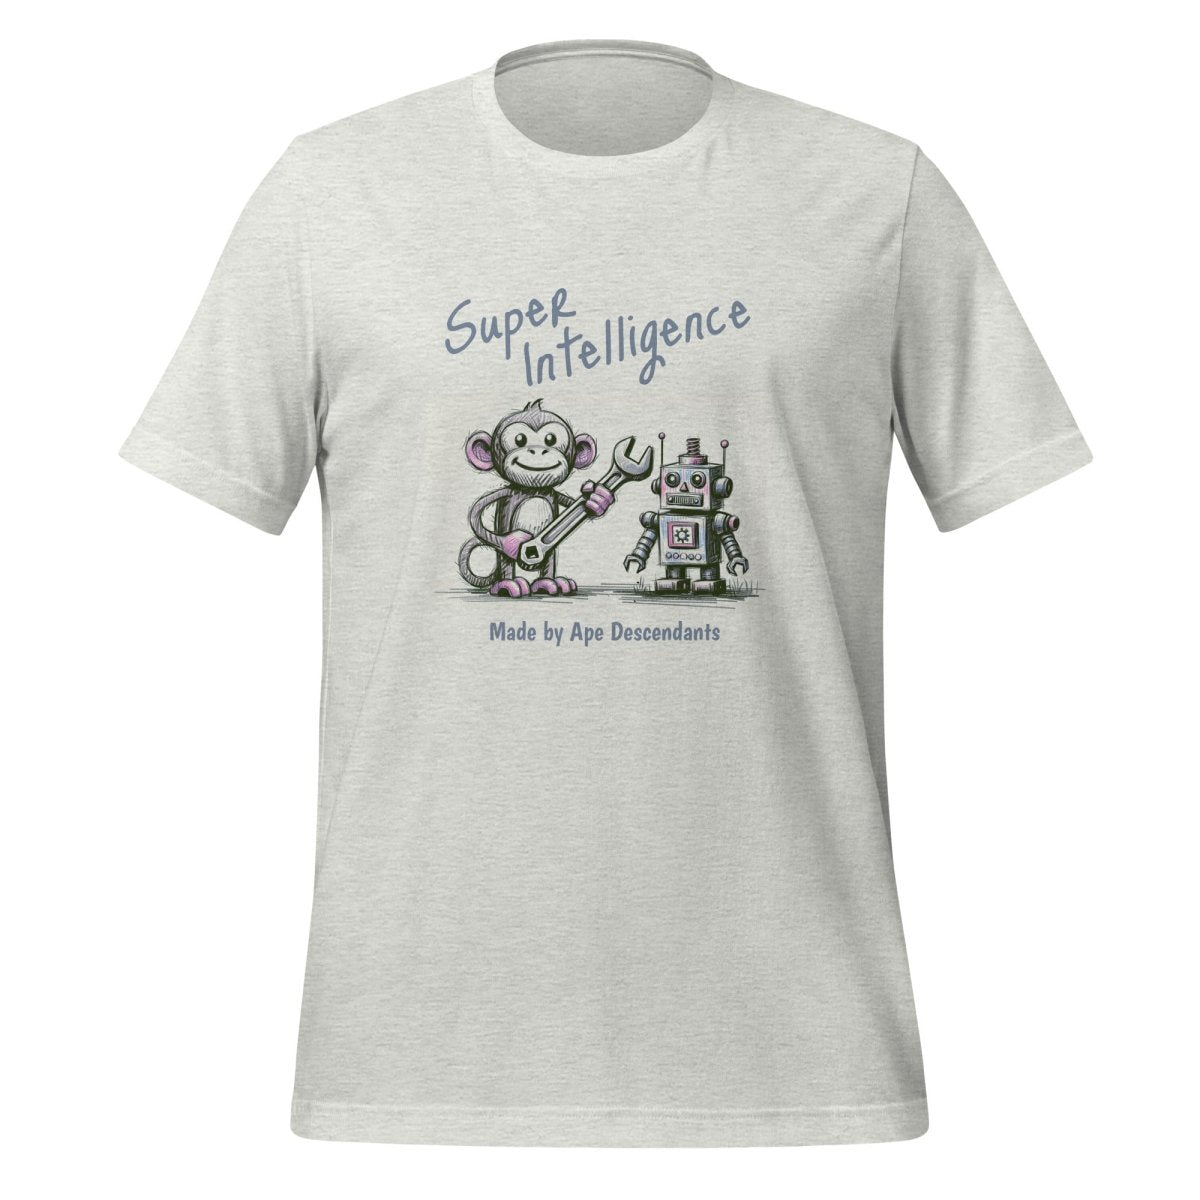 Made by Ape Descendants T - Shirt (unisex) - Ash - AI Store